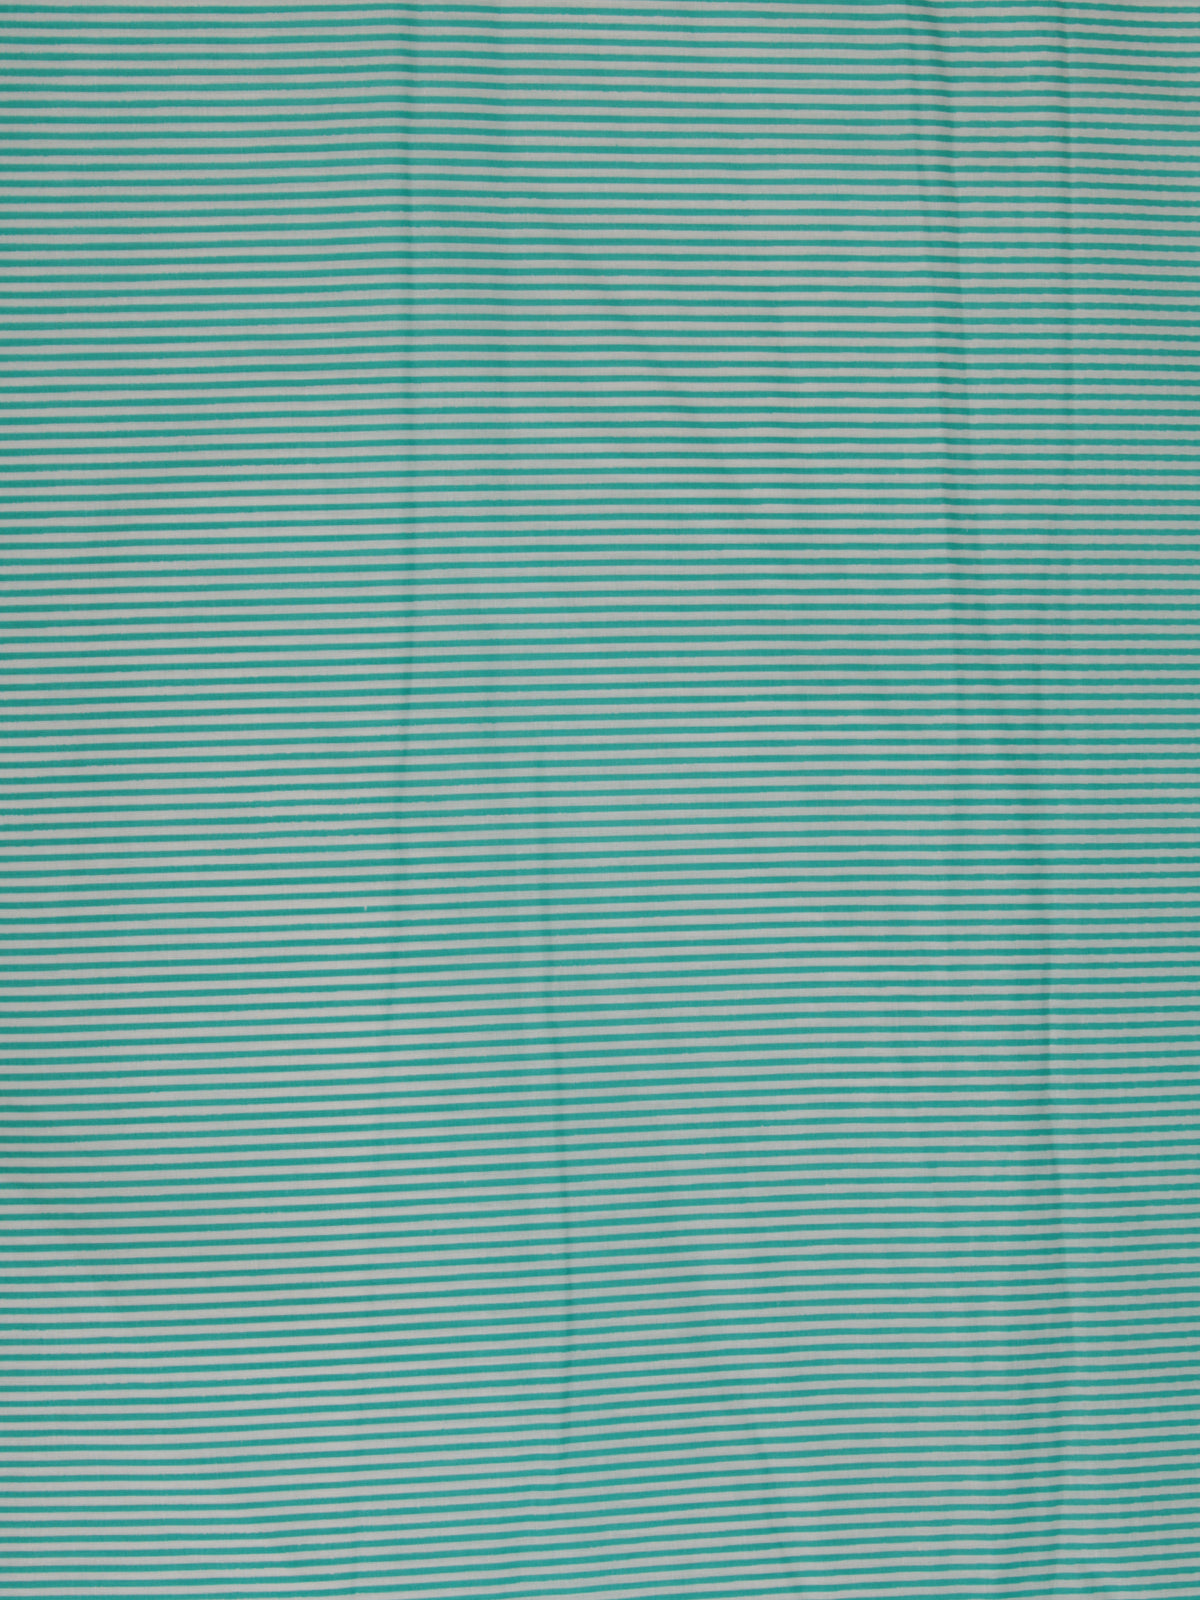 Sea Green White Block Printed Cotton Fabric Per Meter - F001F2375